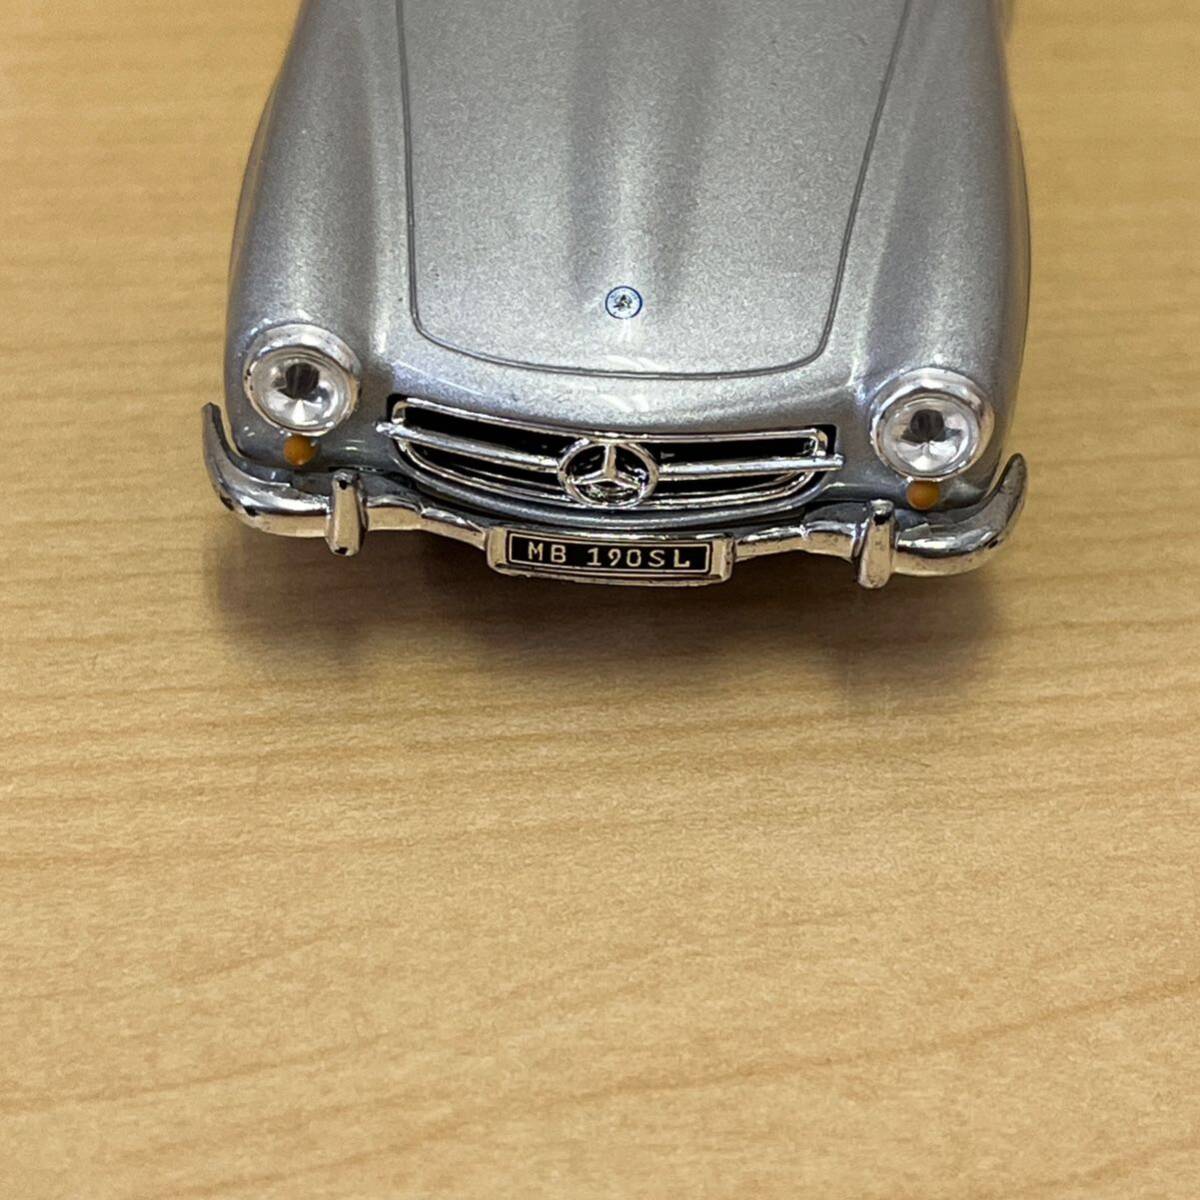 [TS0421]18 миникар Mercedes Benz MB190SL серебряный цвет открытый машина высококлассный машина коллекция античный машина 